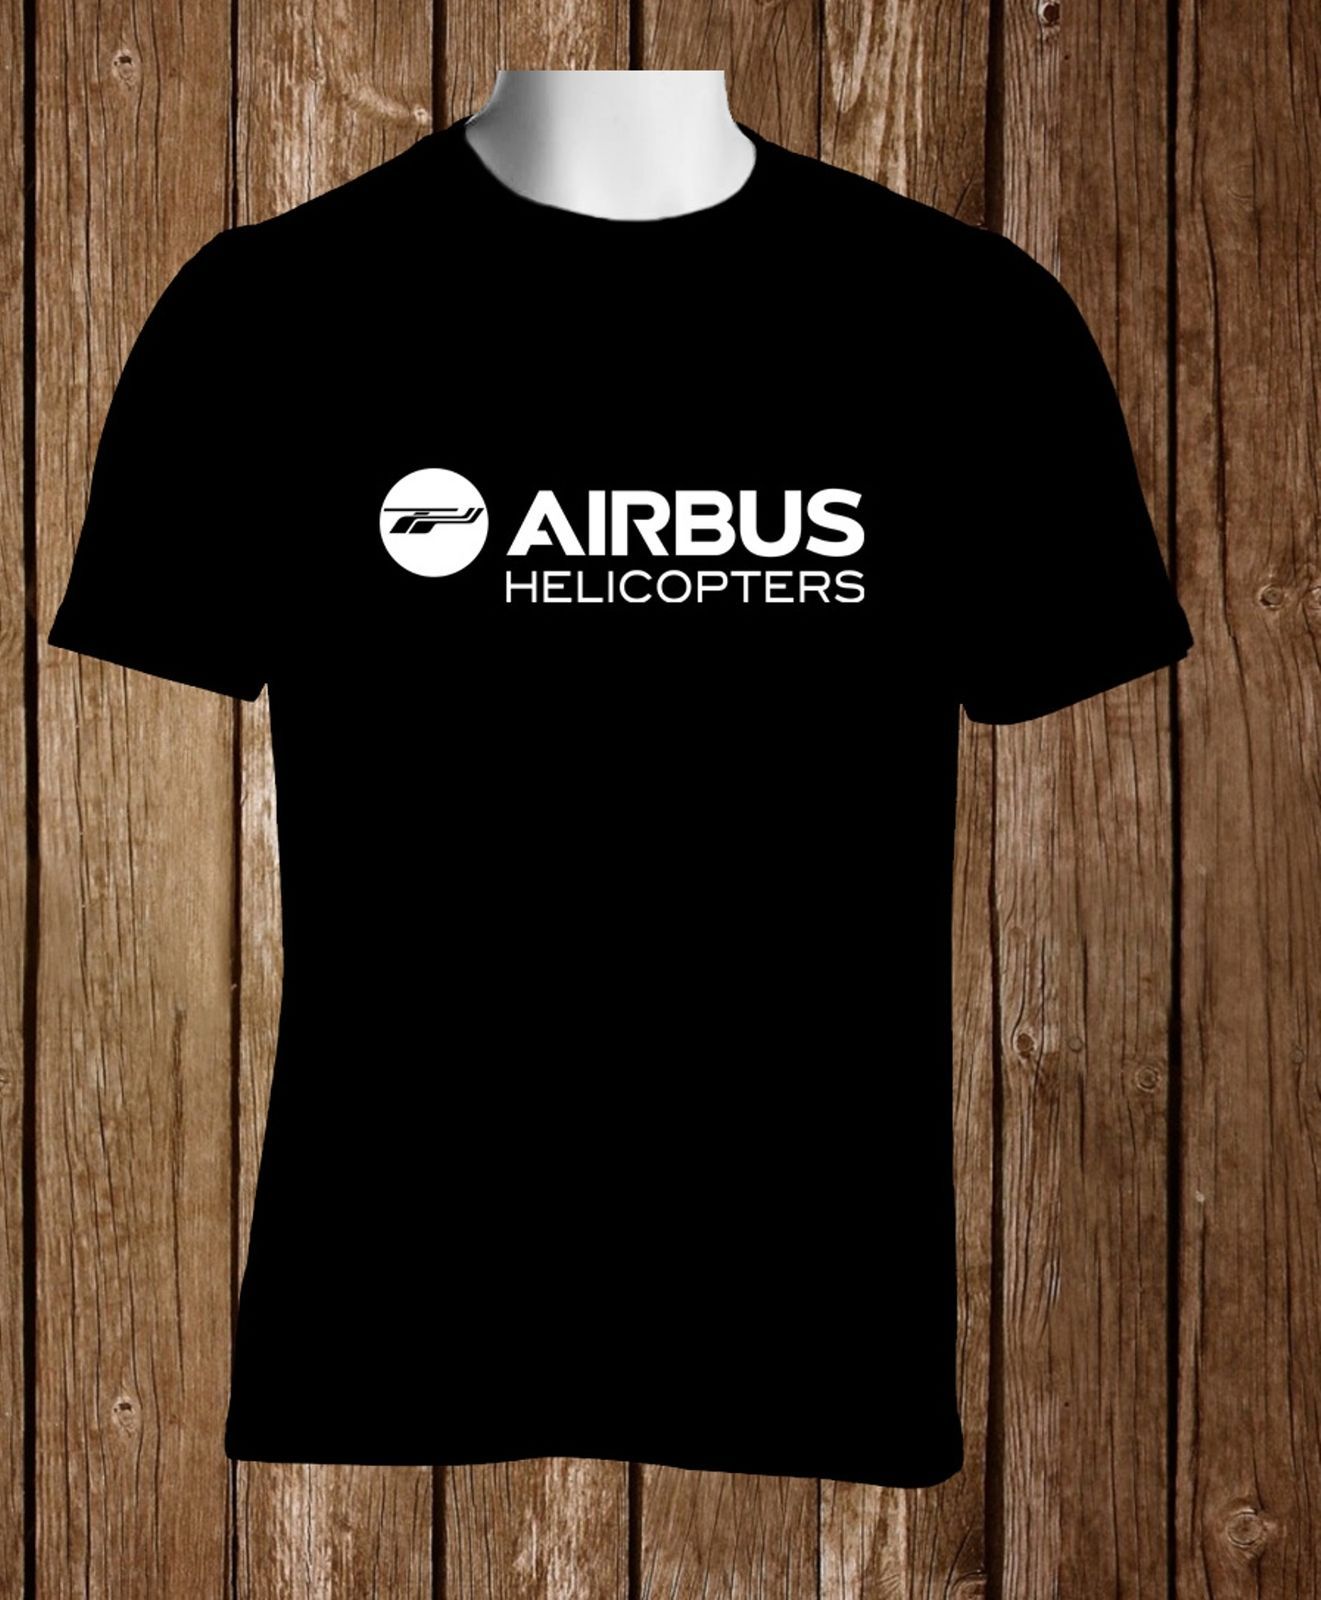 Airbus Helicopters Aircraft Black T Shirt Mens Tshirt S To 3XL Xsy15tshirt, $18.14 | DHgate.Com